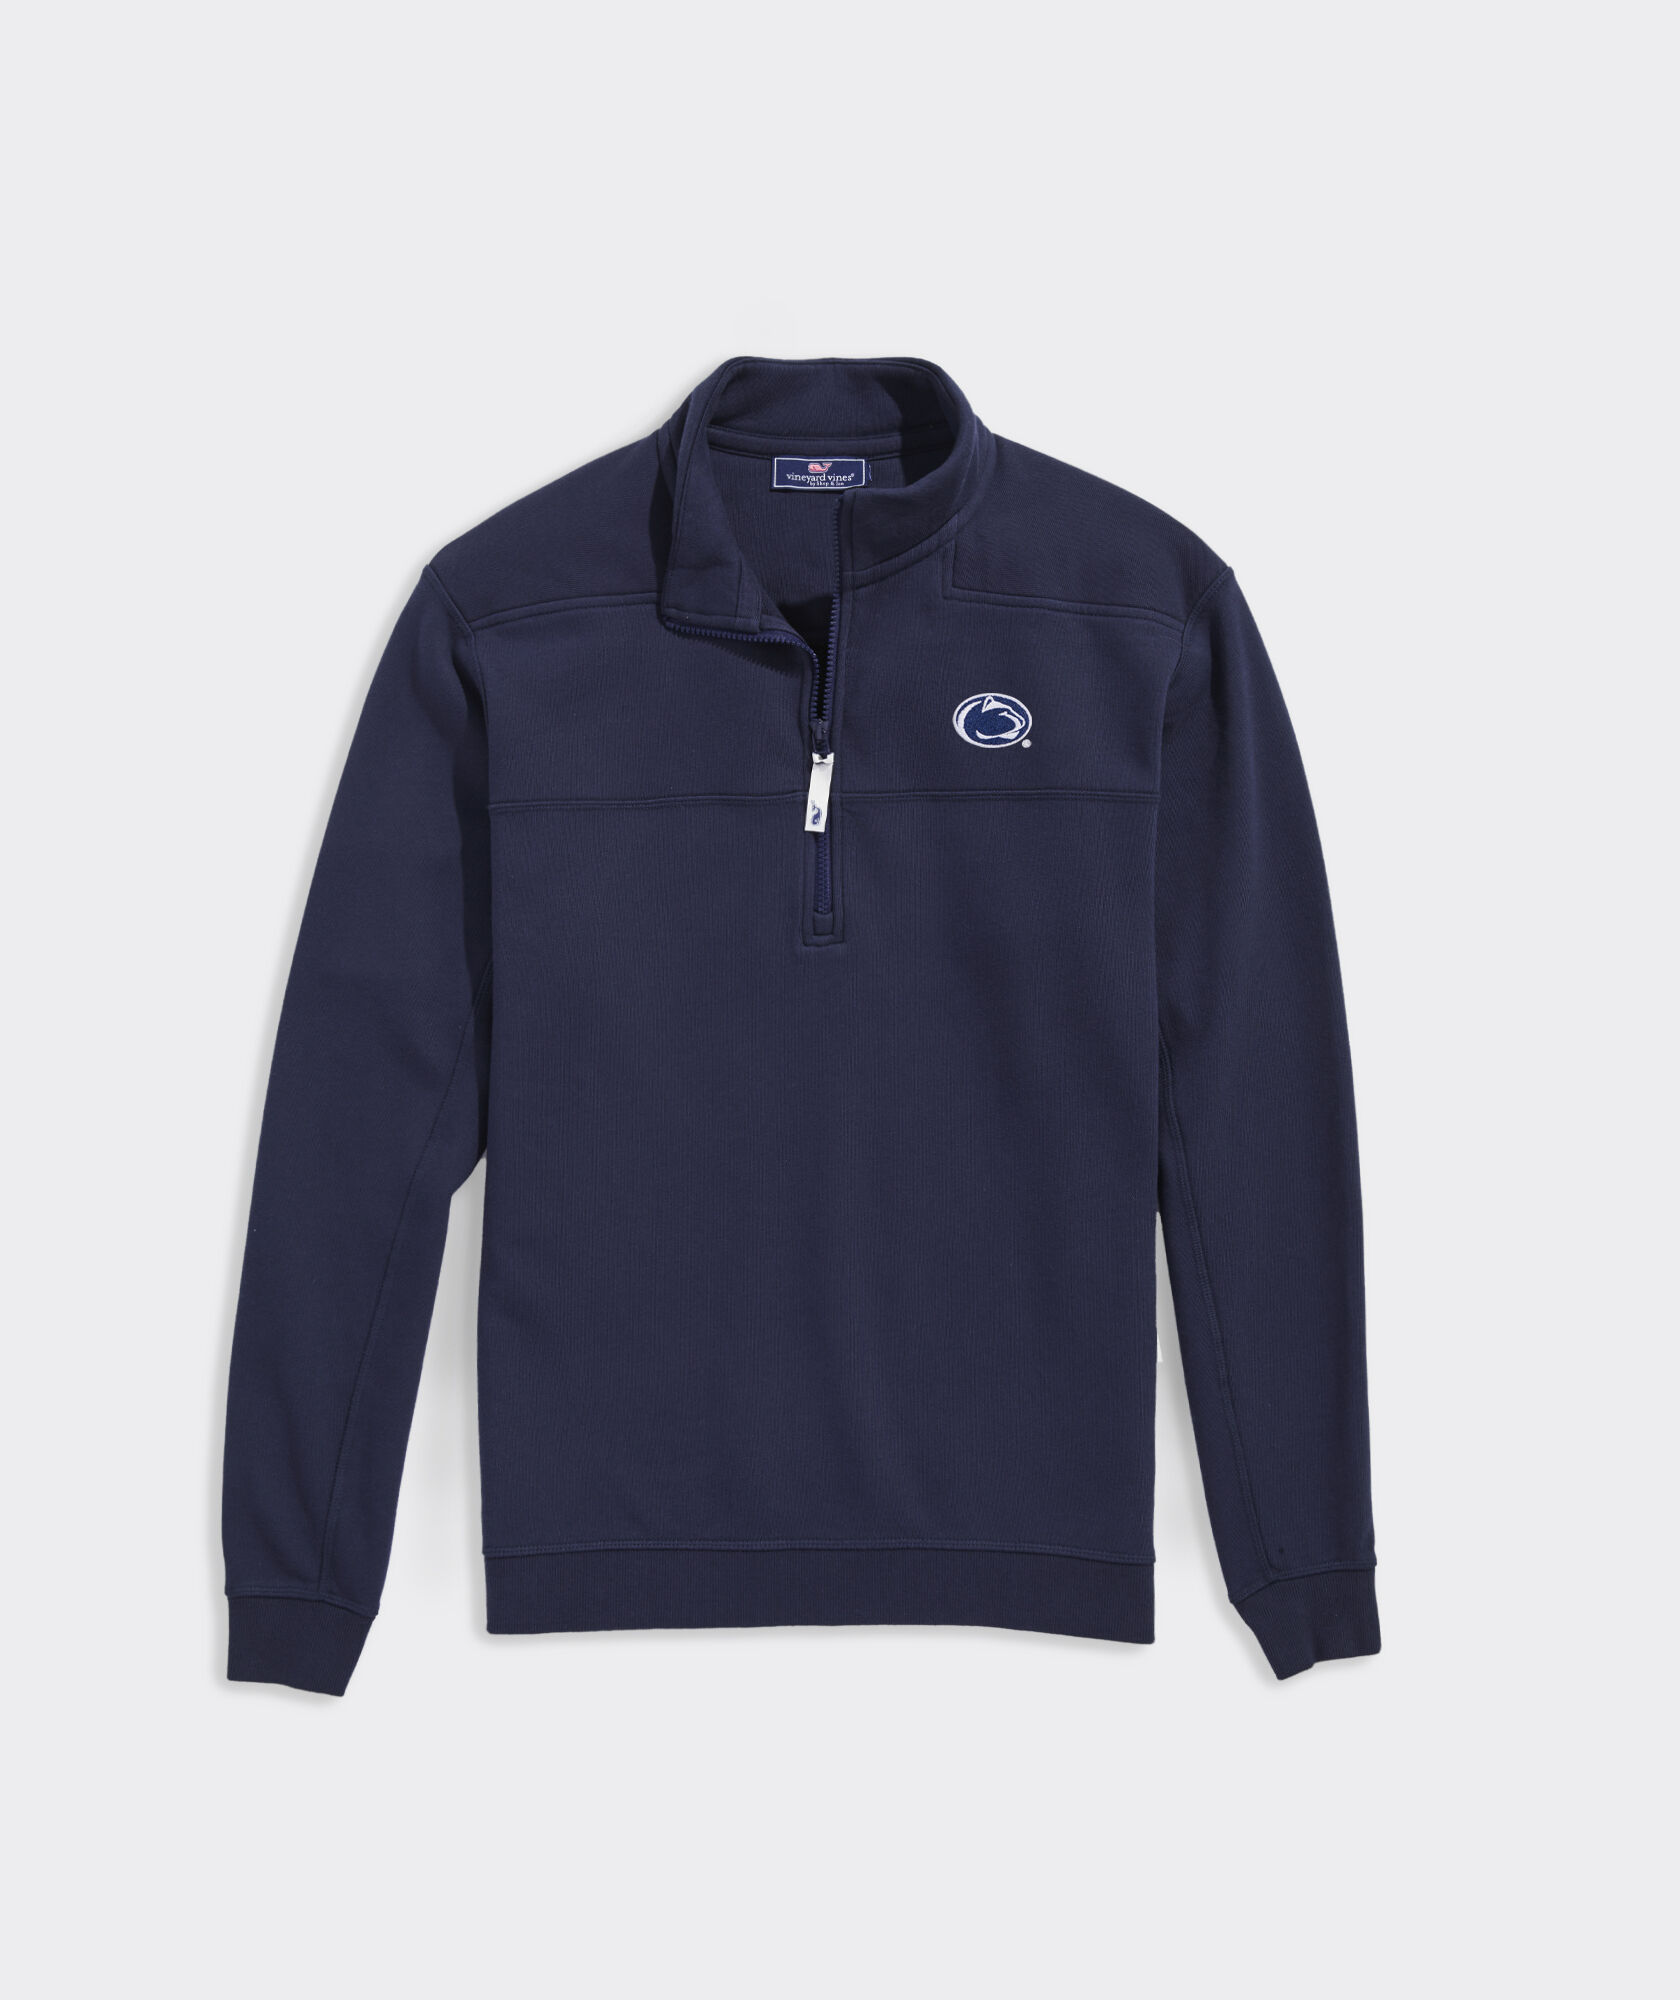 Penn State University Collegiate Shep Shirt